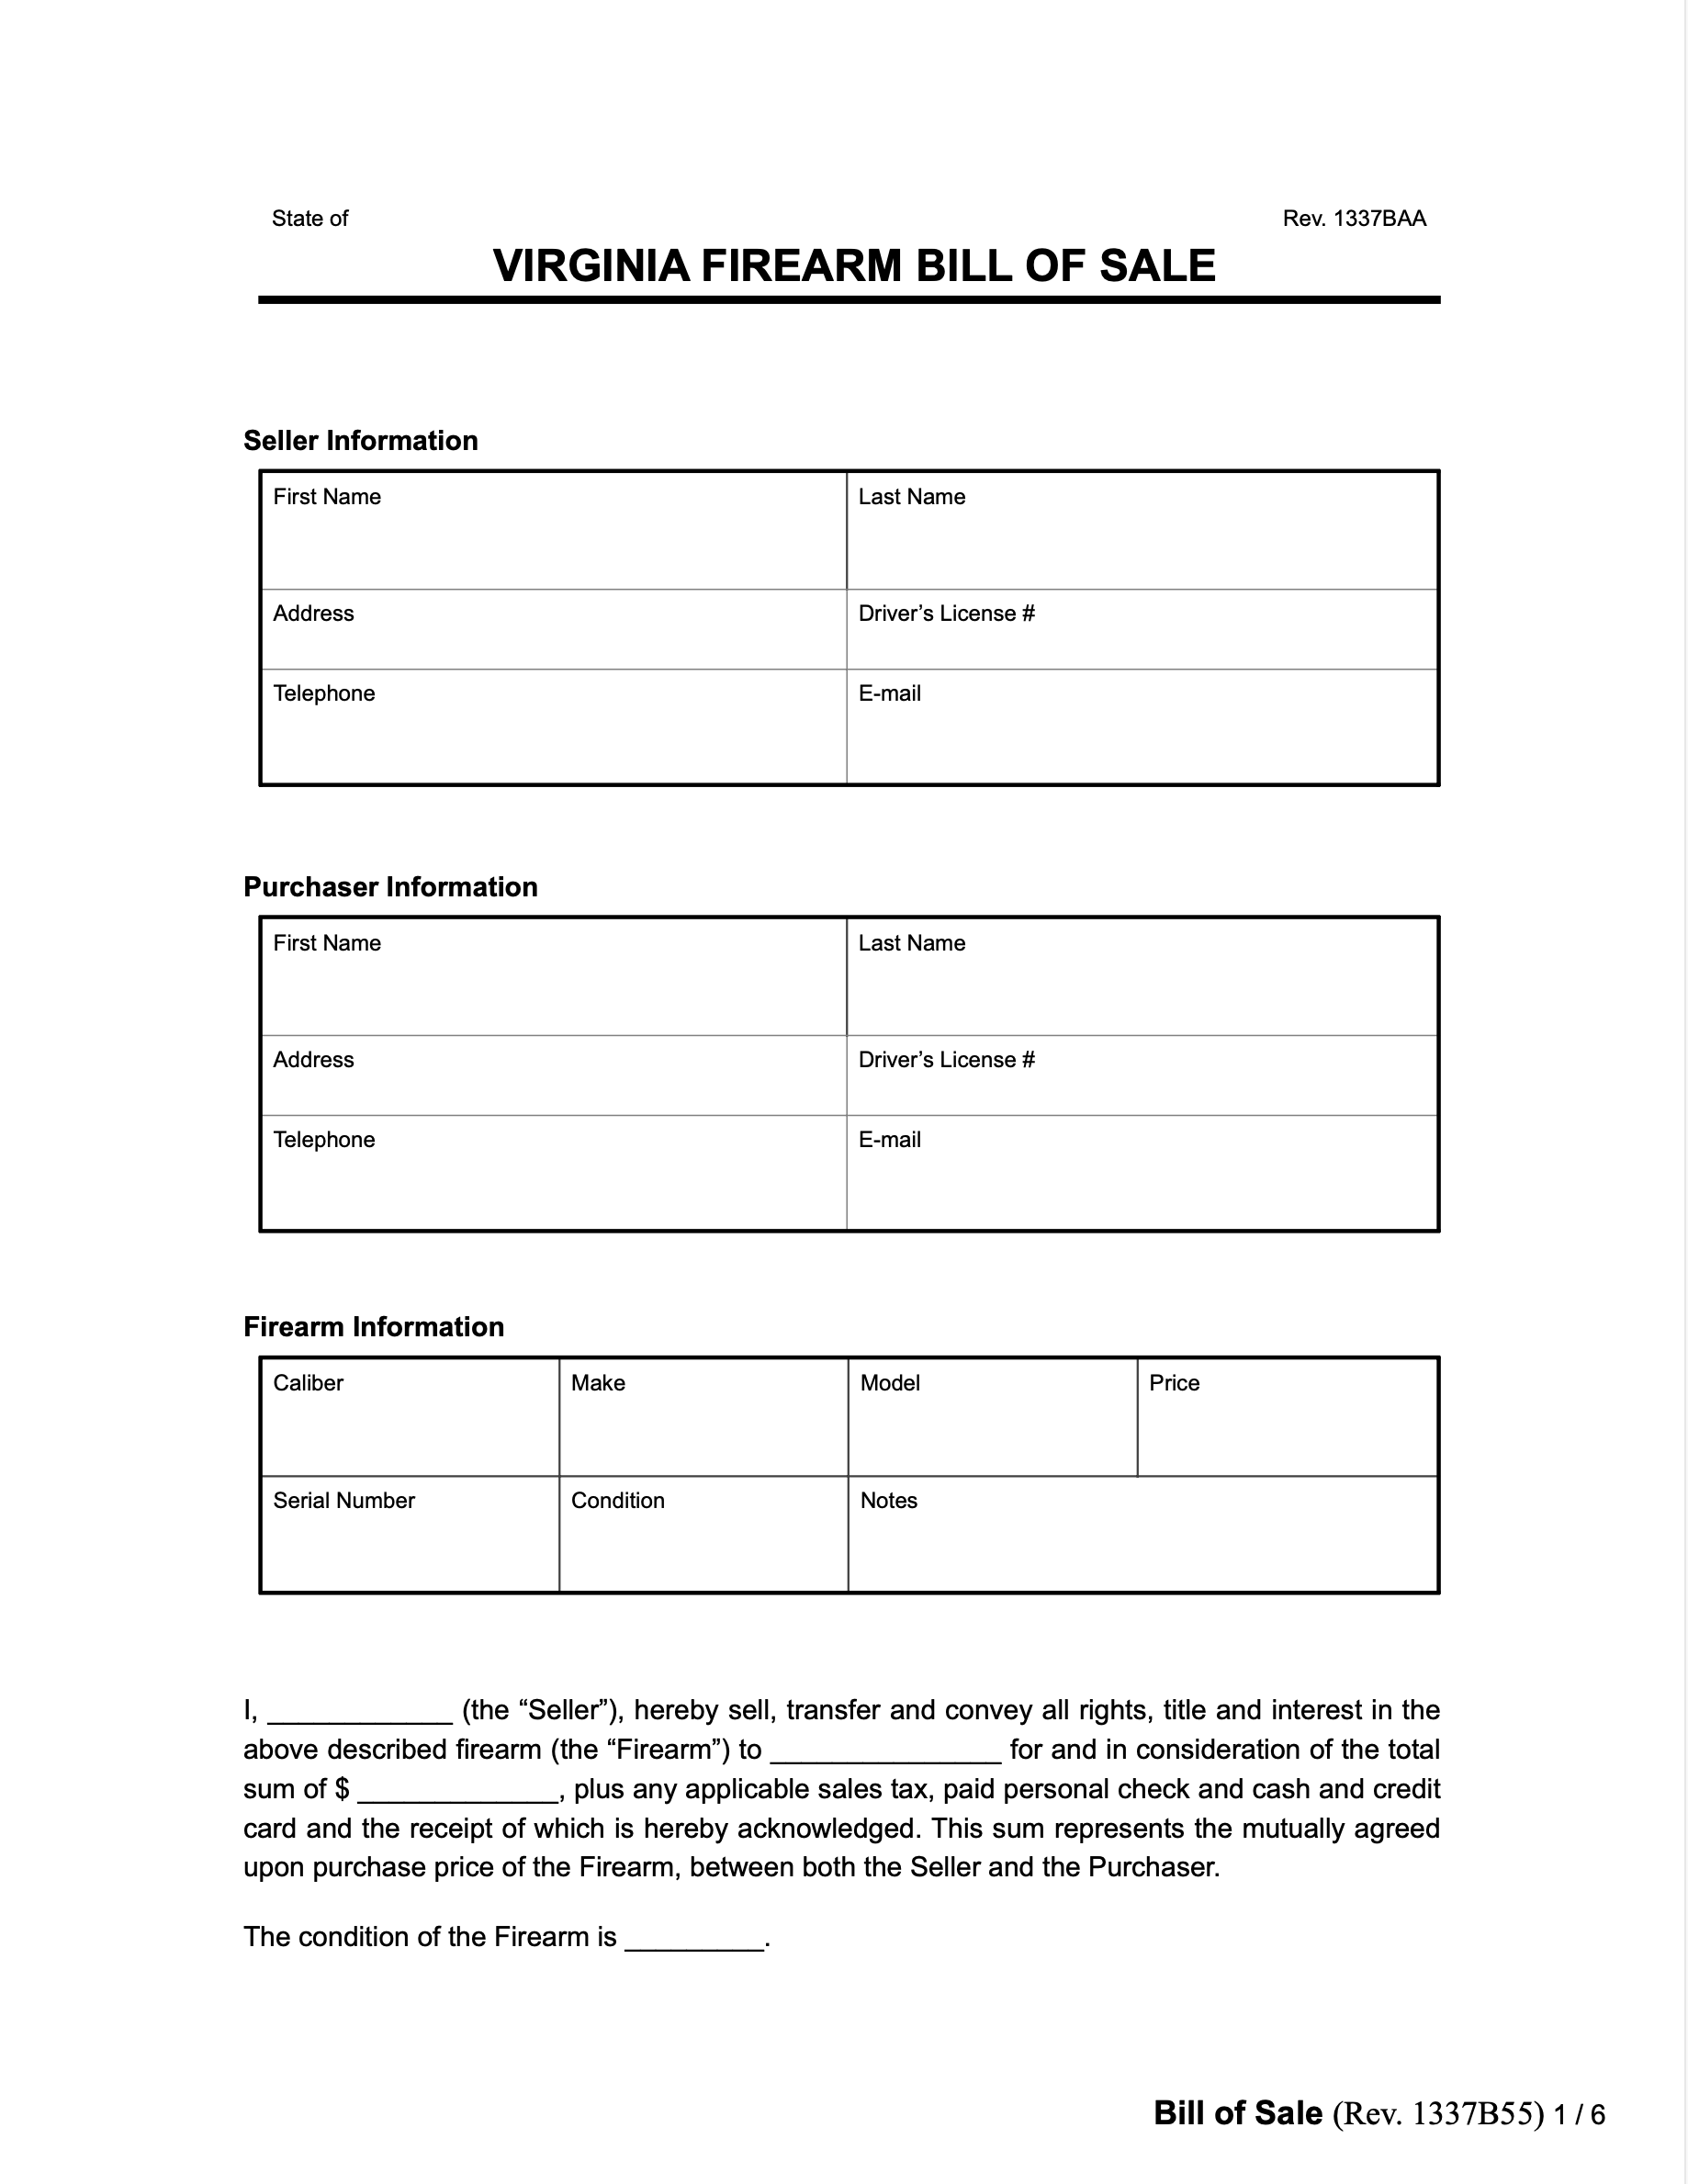 Virginia firearm bill of sale form